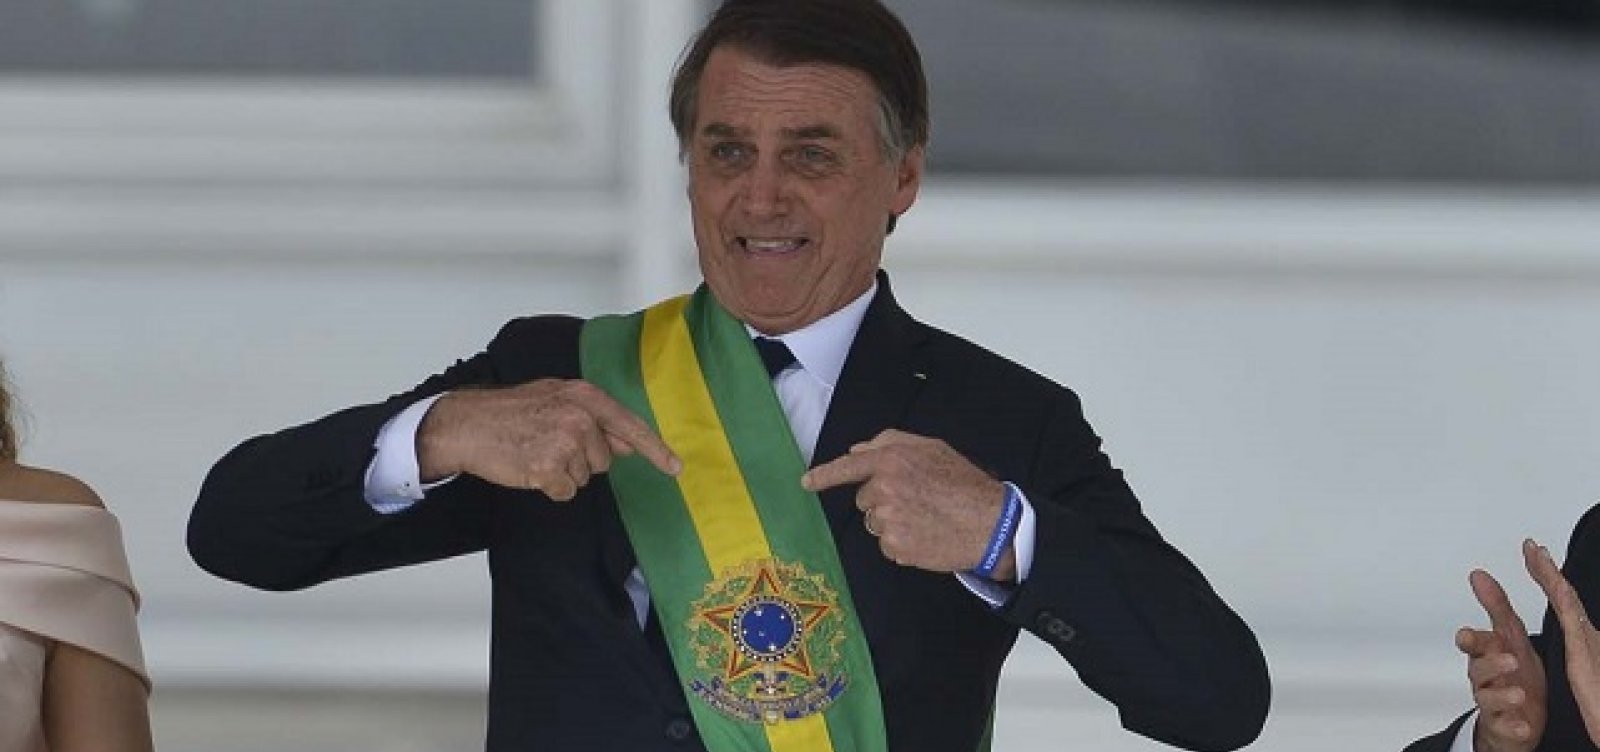 Bolsonaro é aconselhado por interlocutores a evitar temas econômicos em suas falas